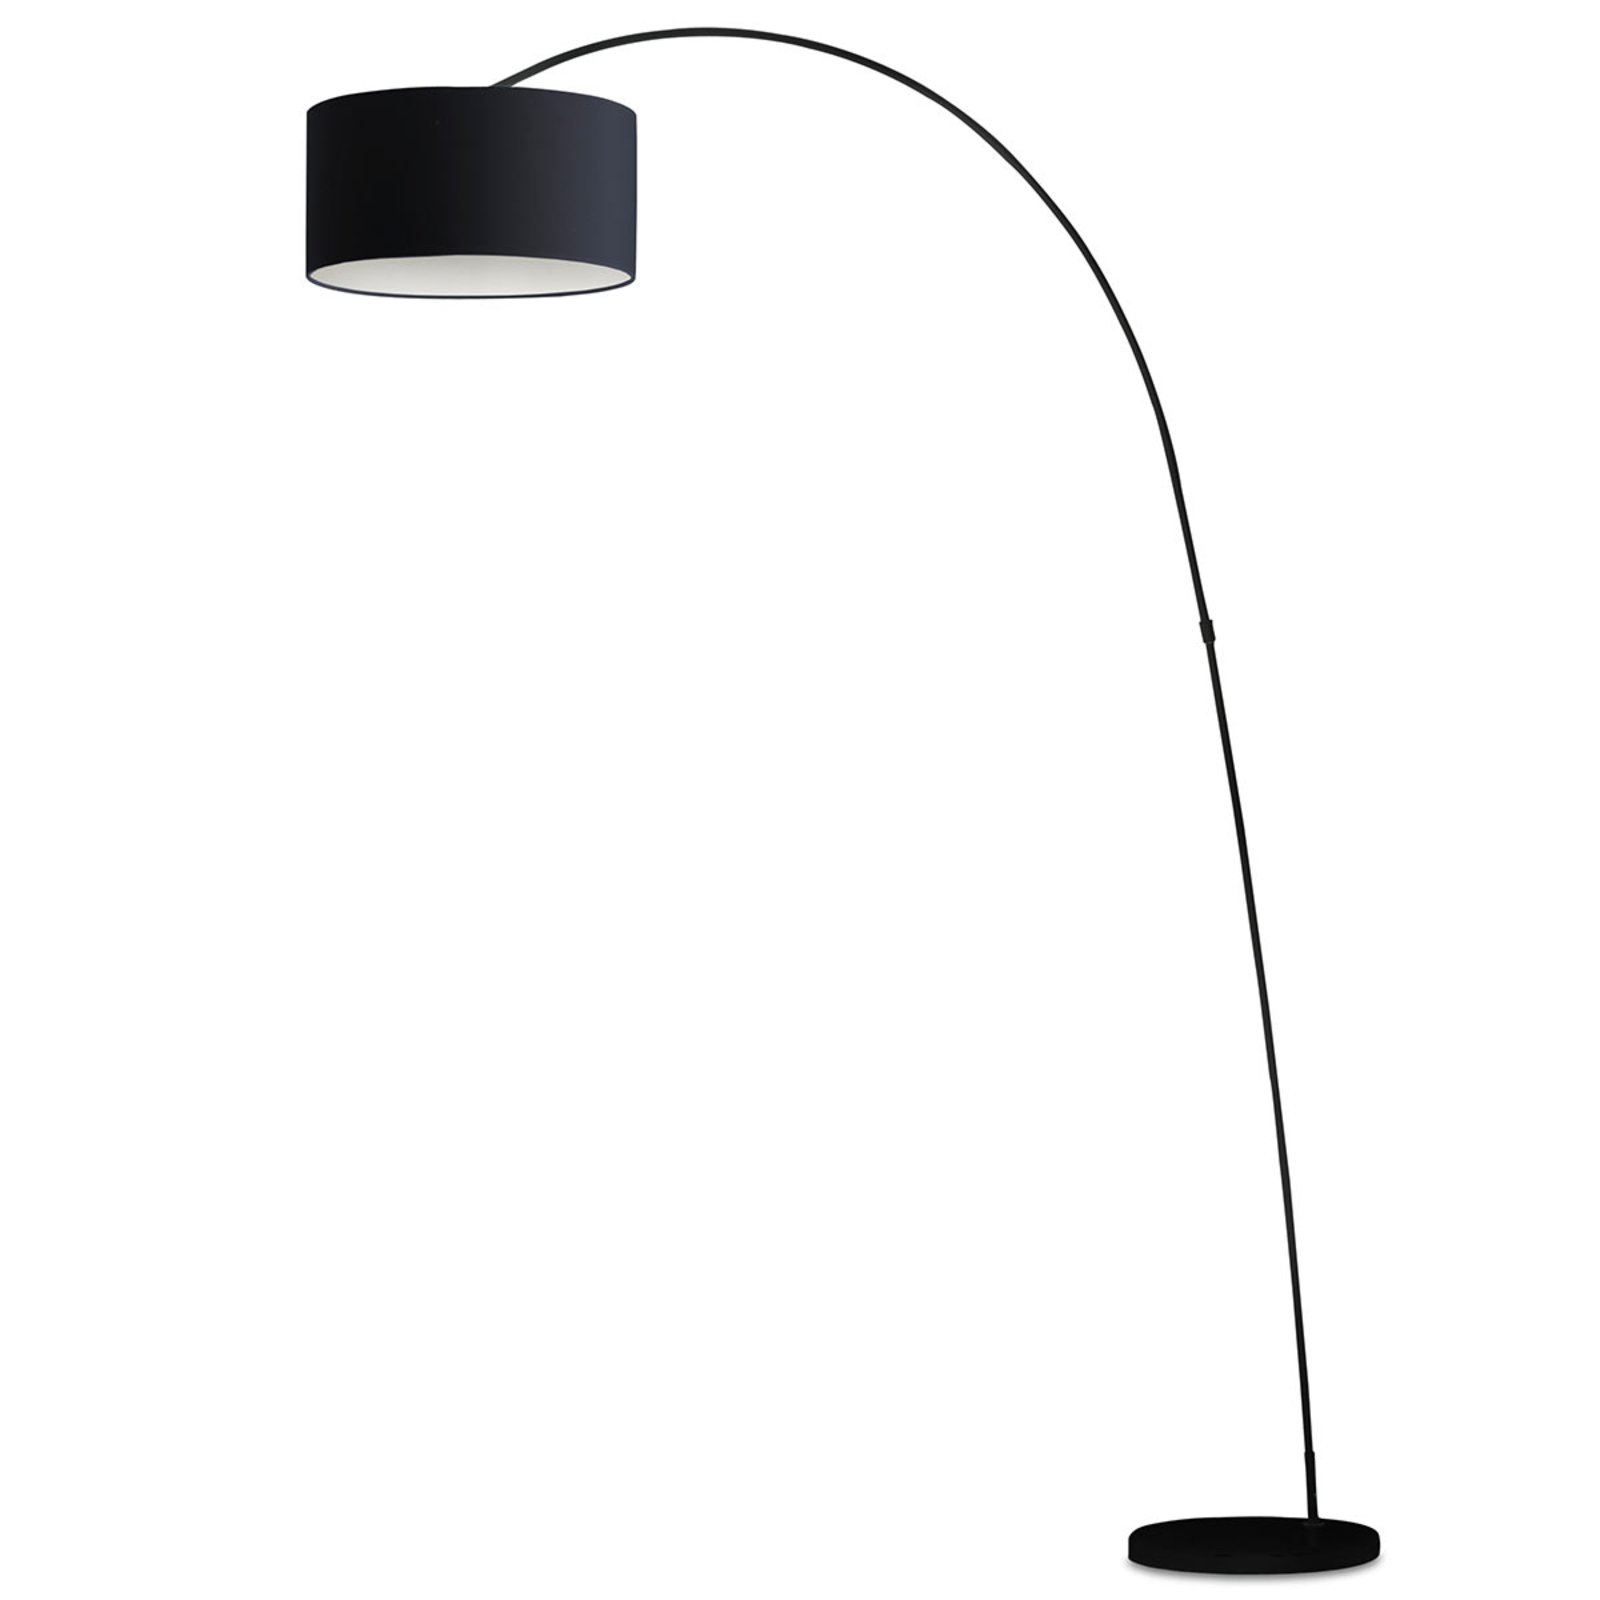 Dekoratyvinis lankinis šviestuvas PAPUA, juodas